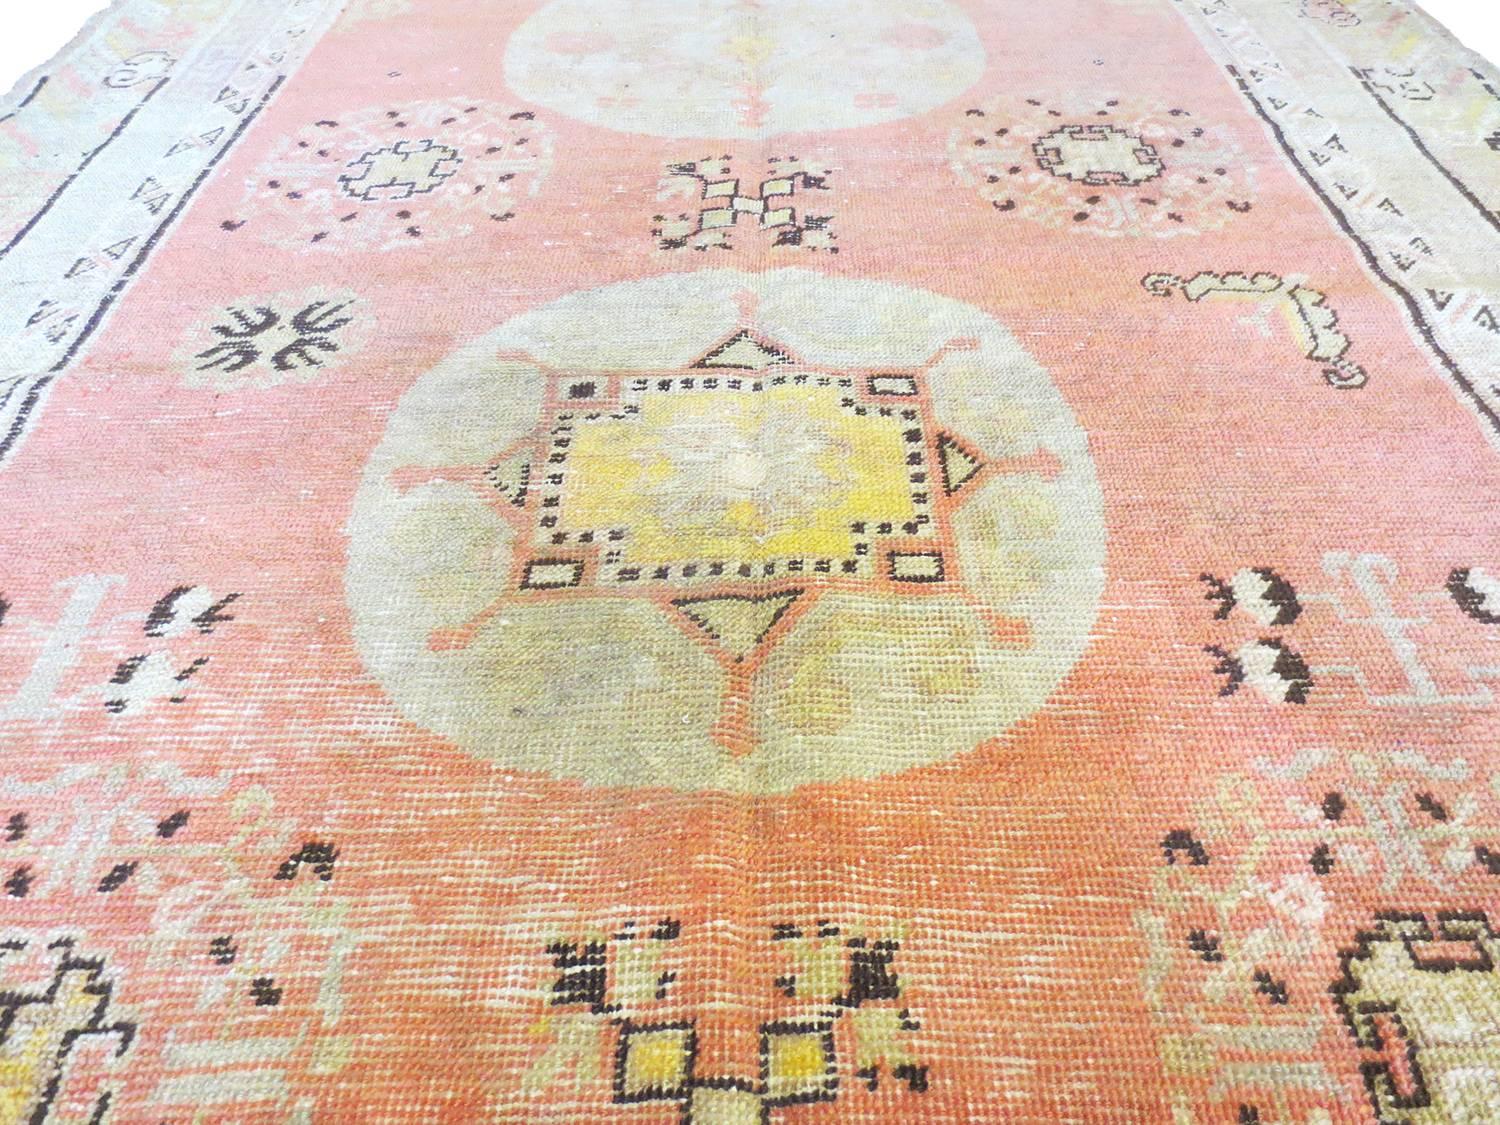 Dies ist ein schöner antiker Khotan-Teppich aus Ostturkestan. Drei stilisierte Medaillons stehen auf einem weichen Korallenfeld, das von einer Wolkenbordüre umgeben ist. Darstellungen von Granatäpfeln, Schmetterlingen und anderen symbolischen